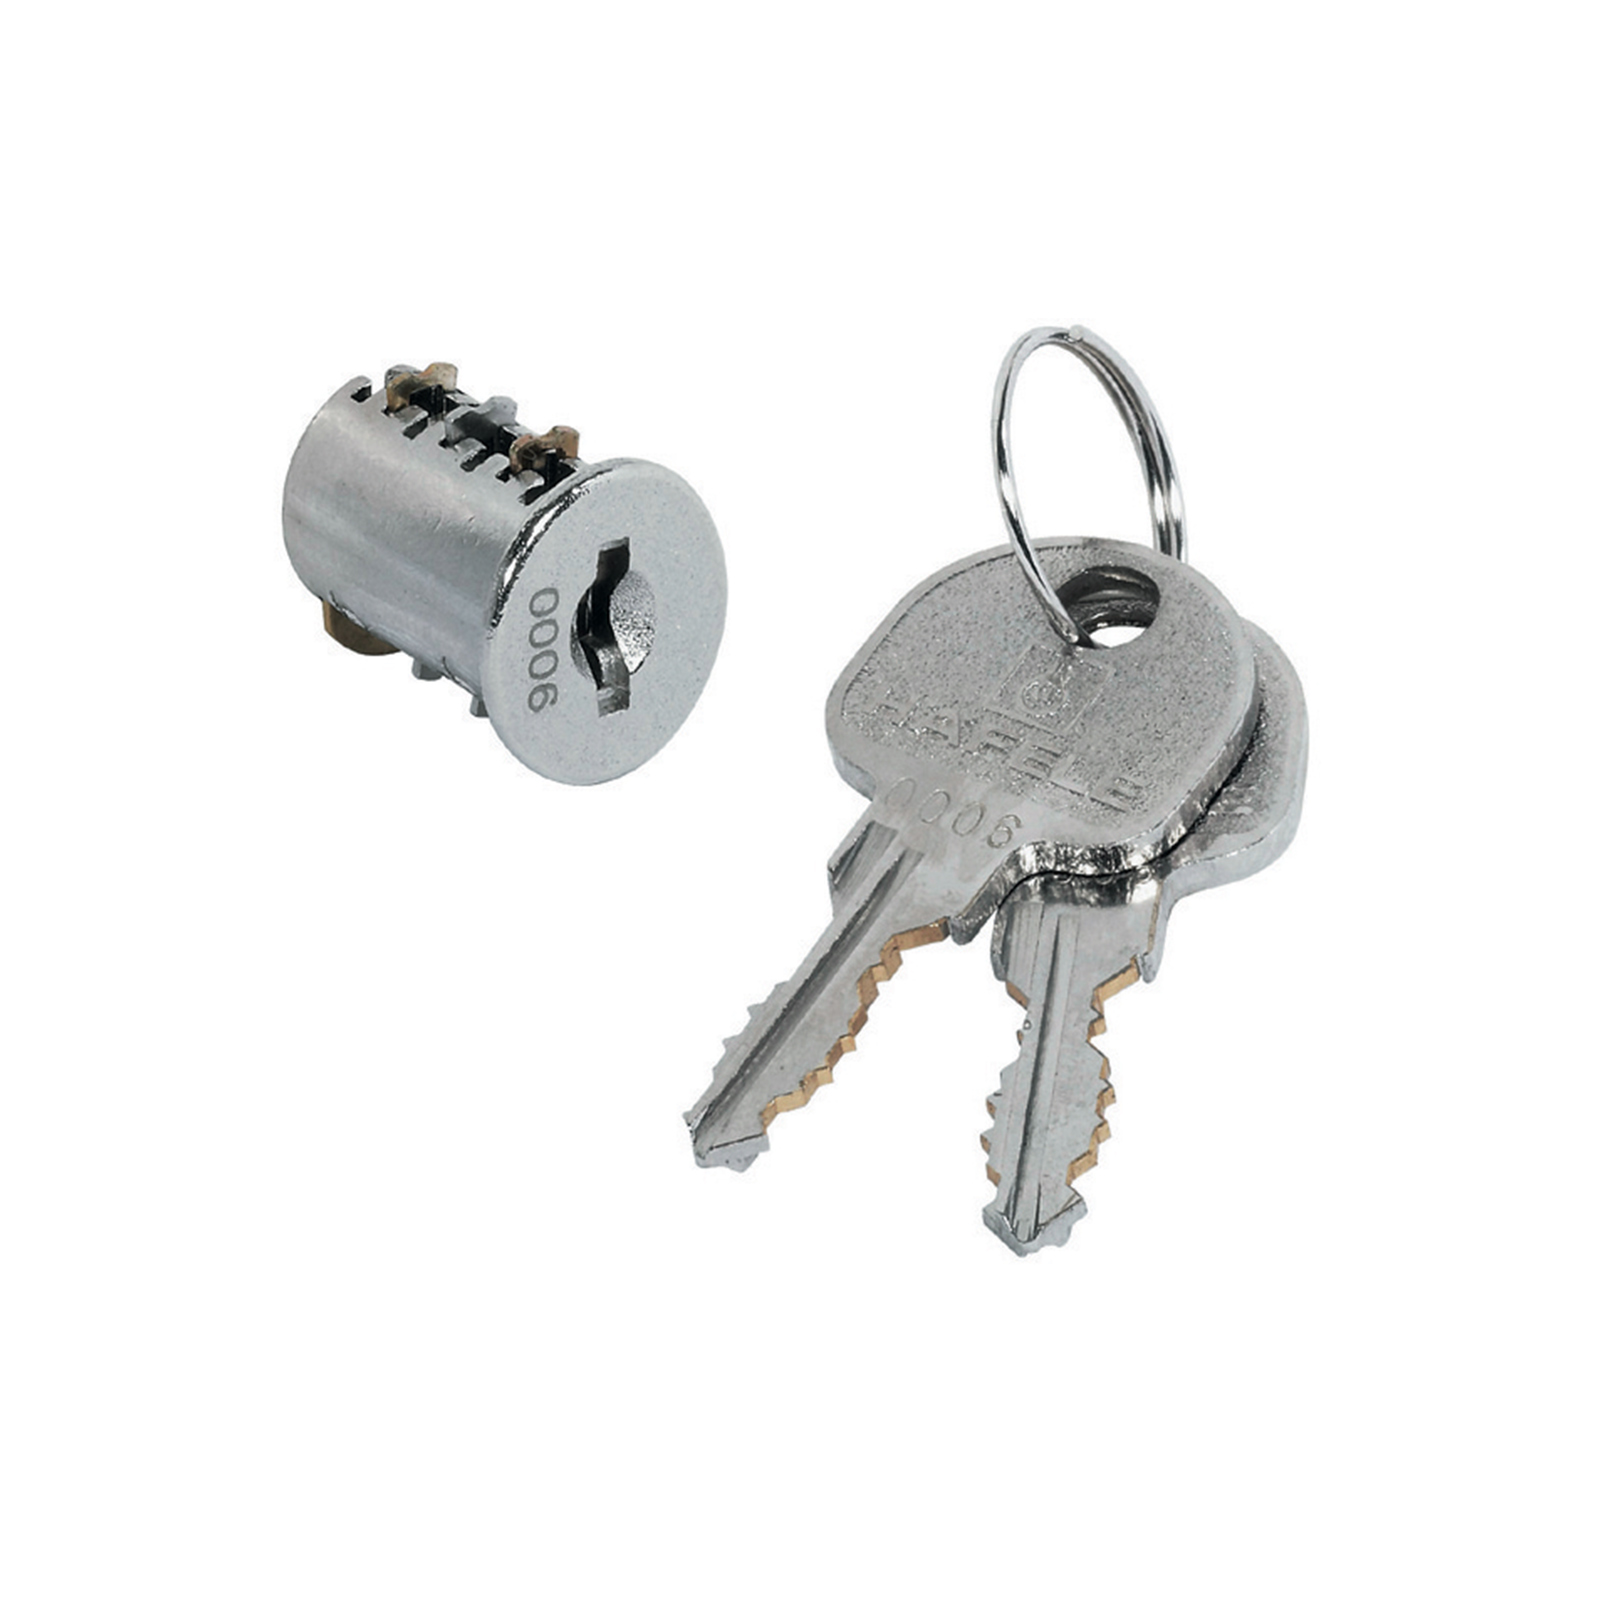 JuNie - Key hole locks